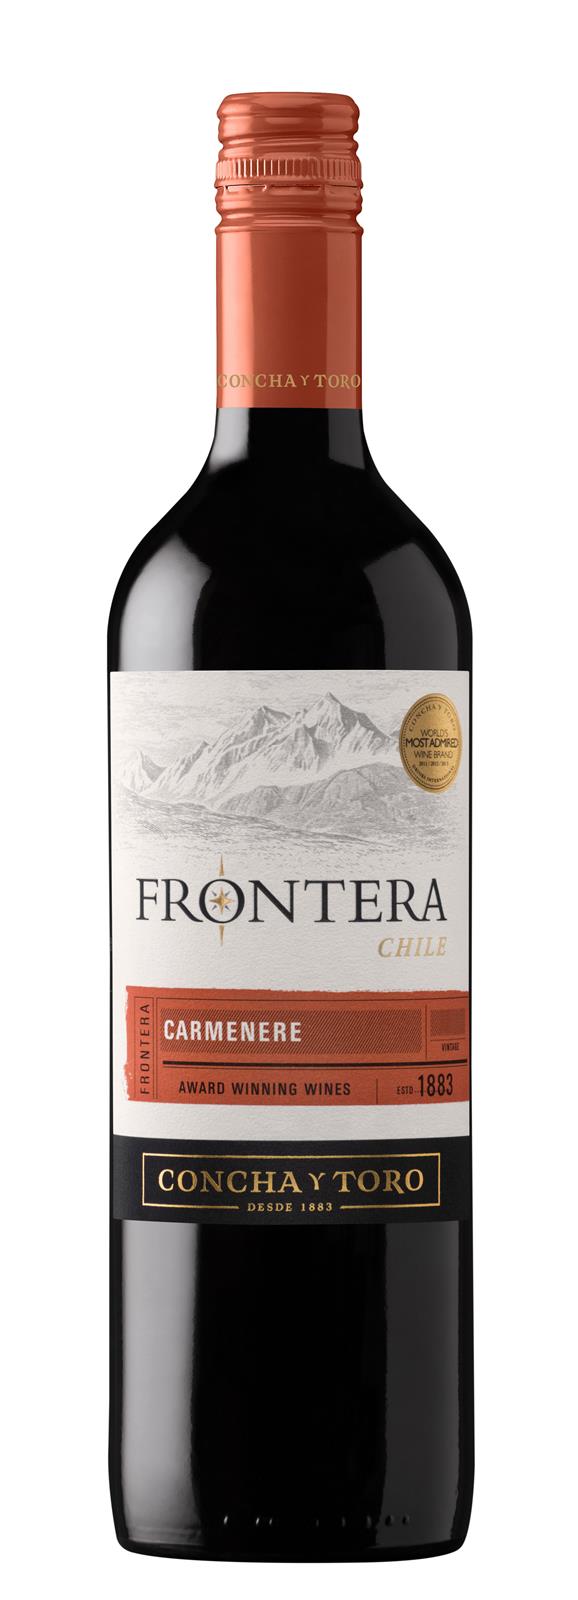 Concha y Toro Frontera Carmenere 2018 (Chile)